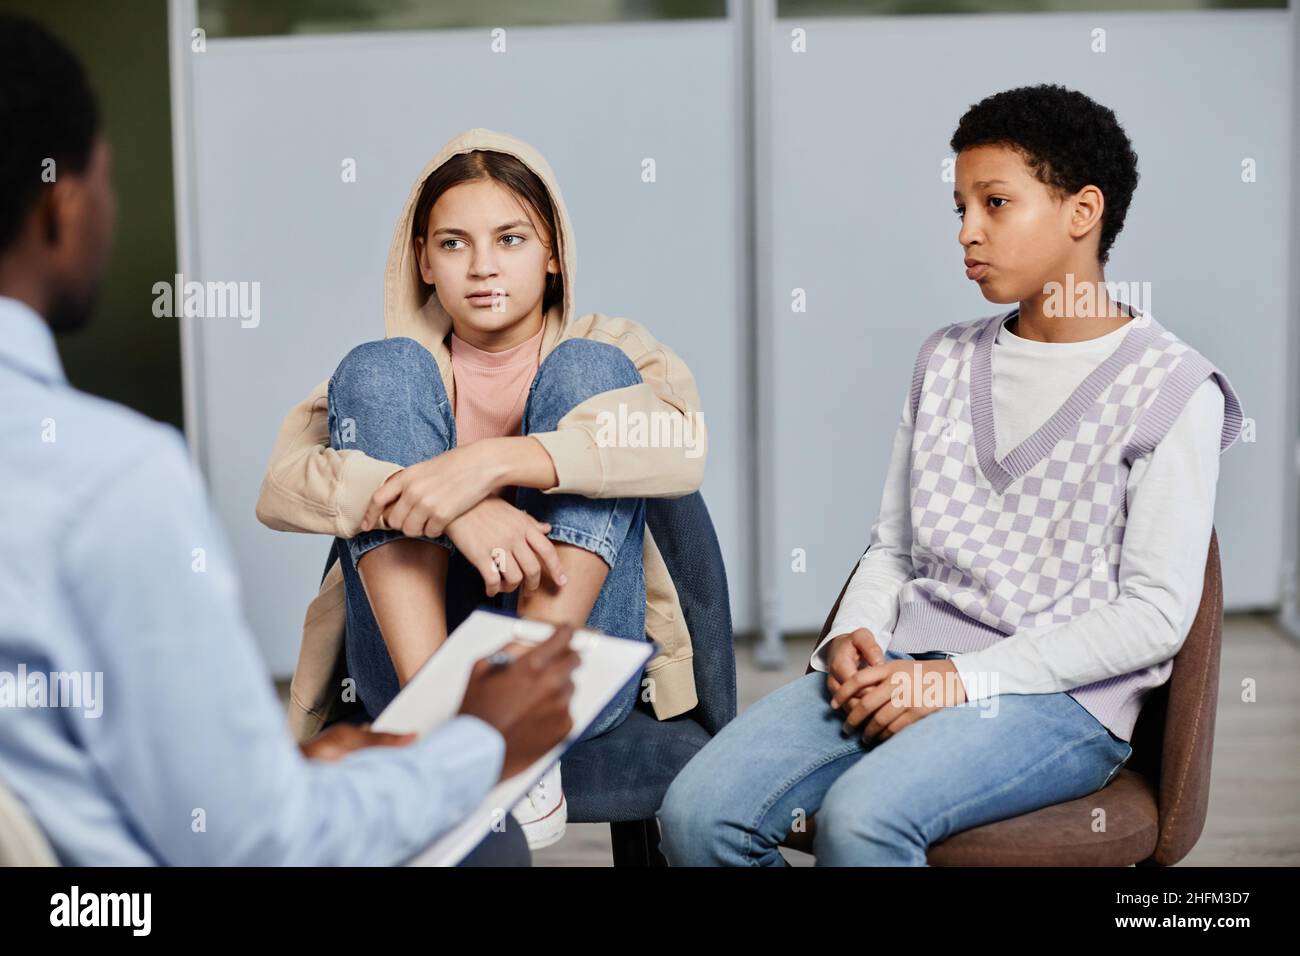 Portrait von zwei Mädchen im Teenageralter, die in einer Therapiesitzung mit einem Psychologen sprechen Stockfoto